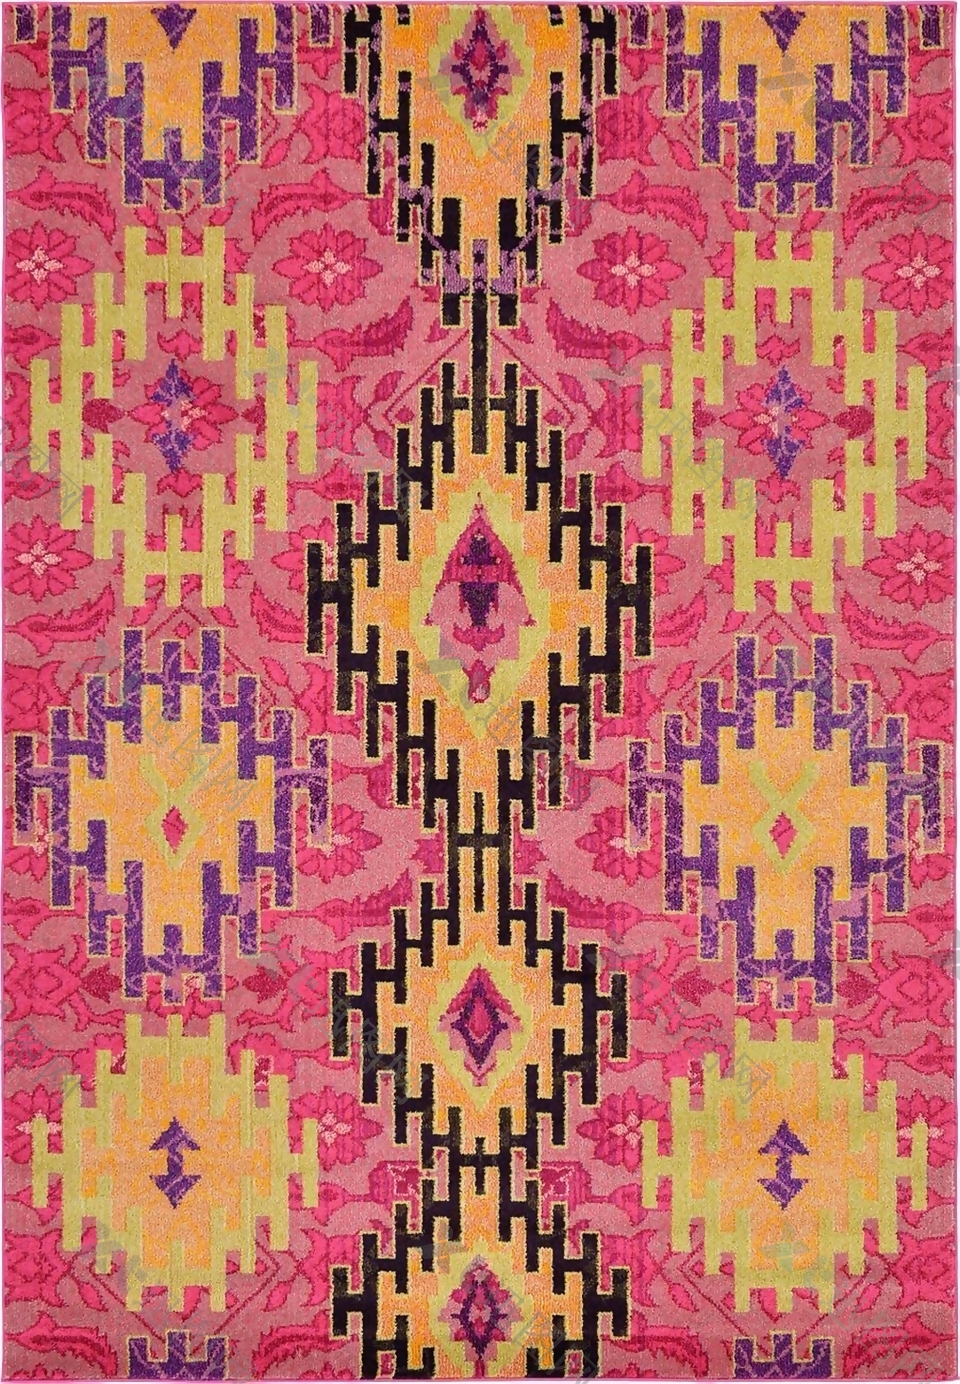 彩色地毯图案方形